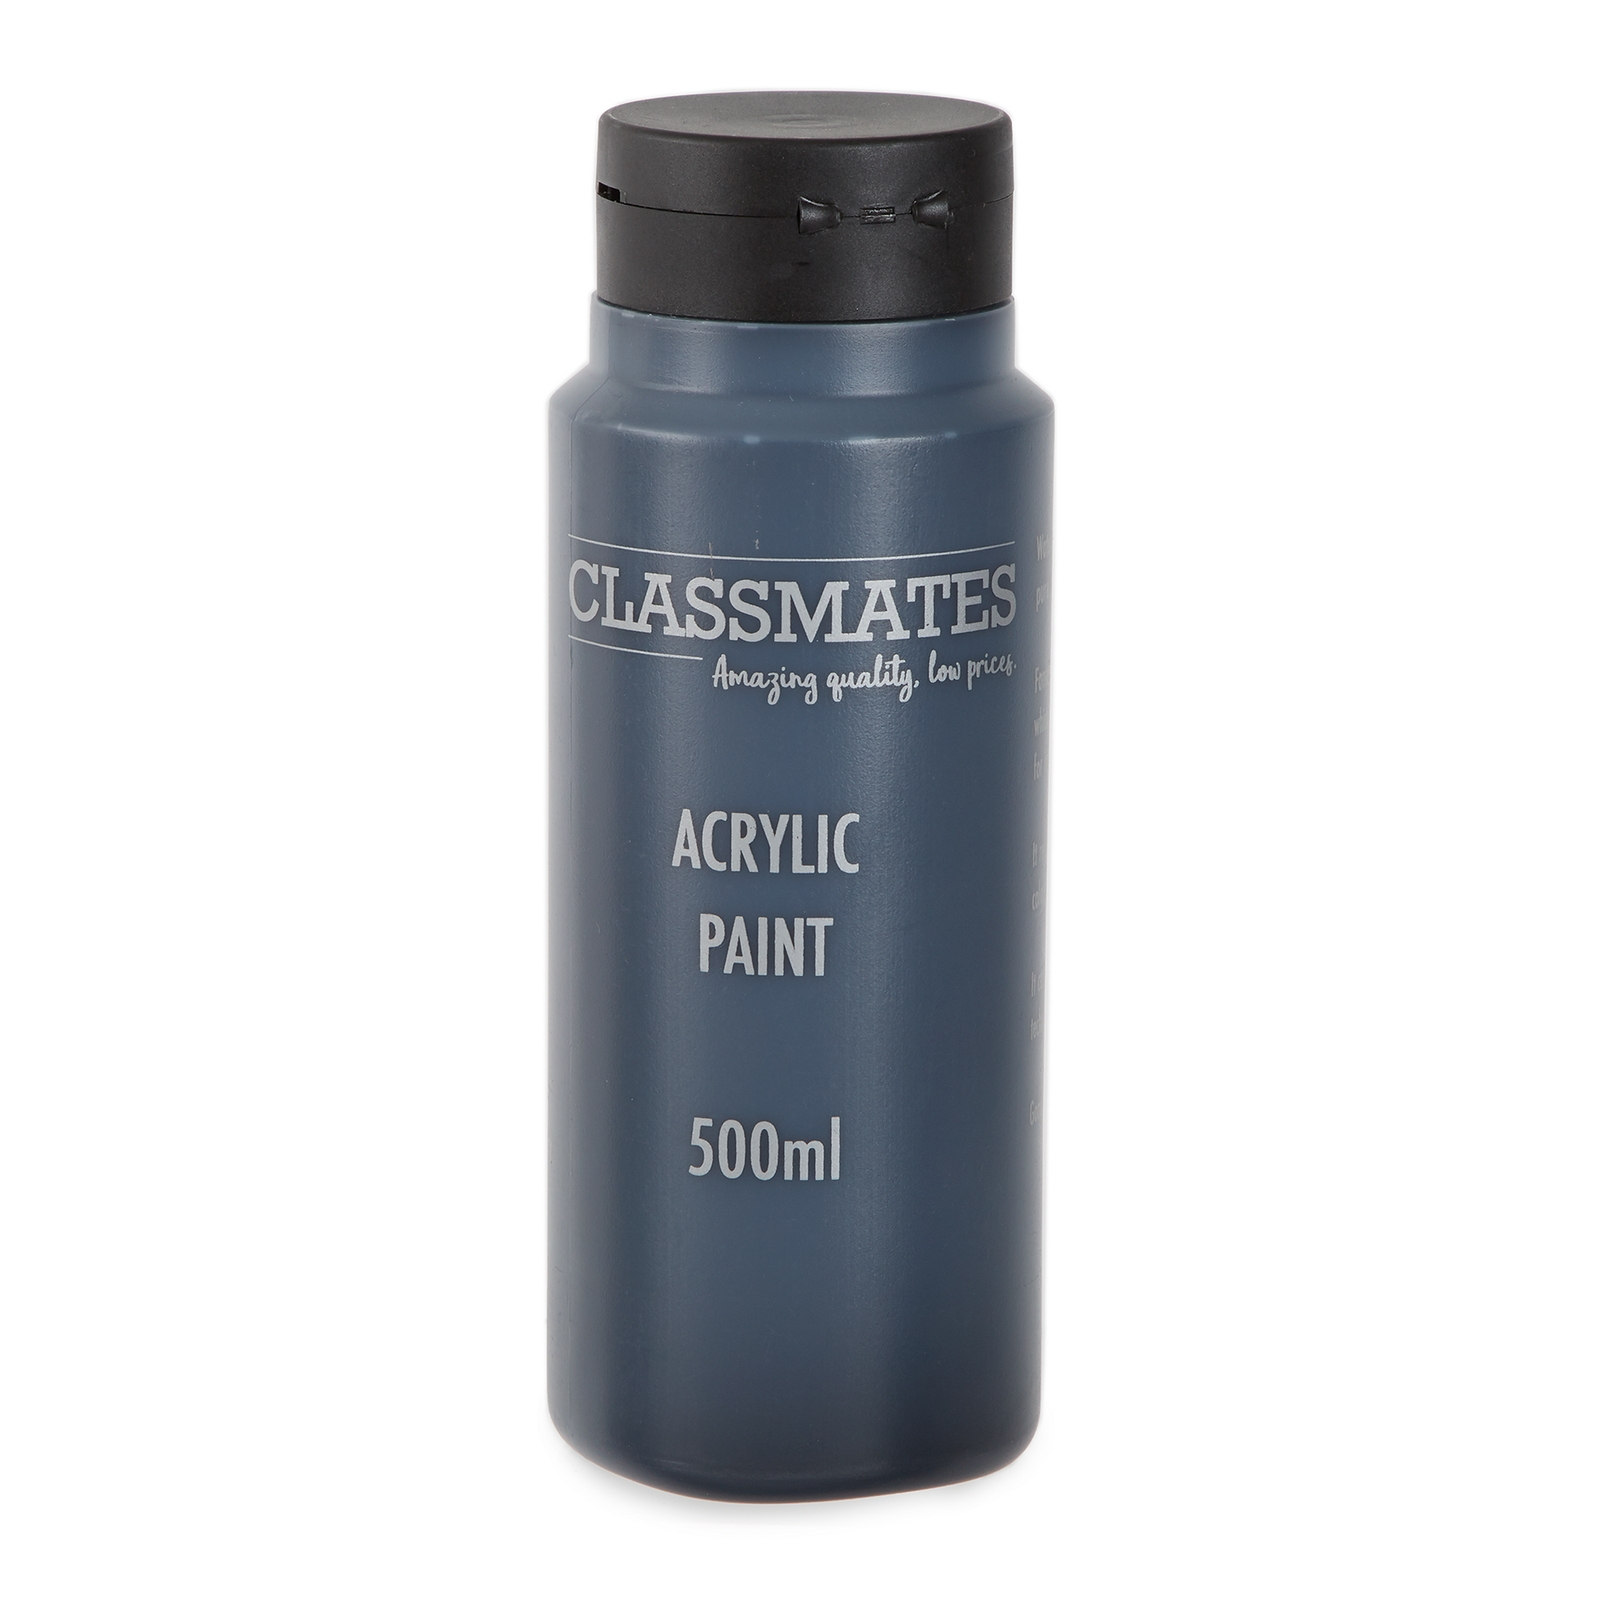 Classmates Acrylic Paint in Carbon Black - 500ml Bottle